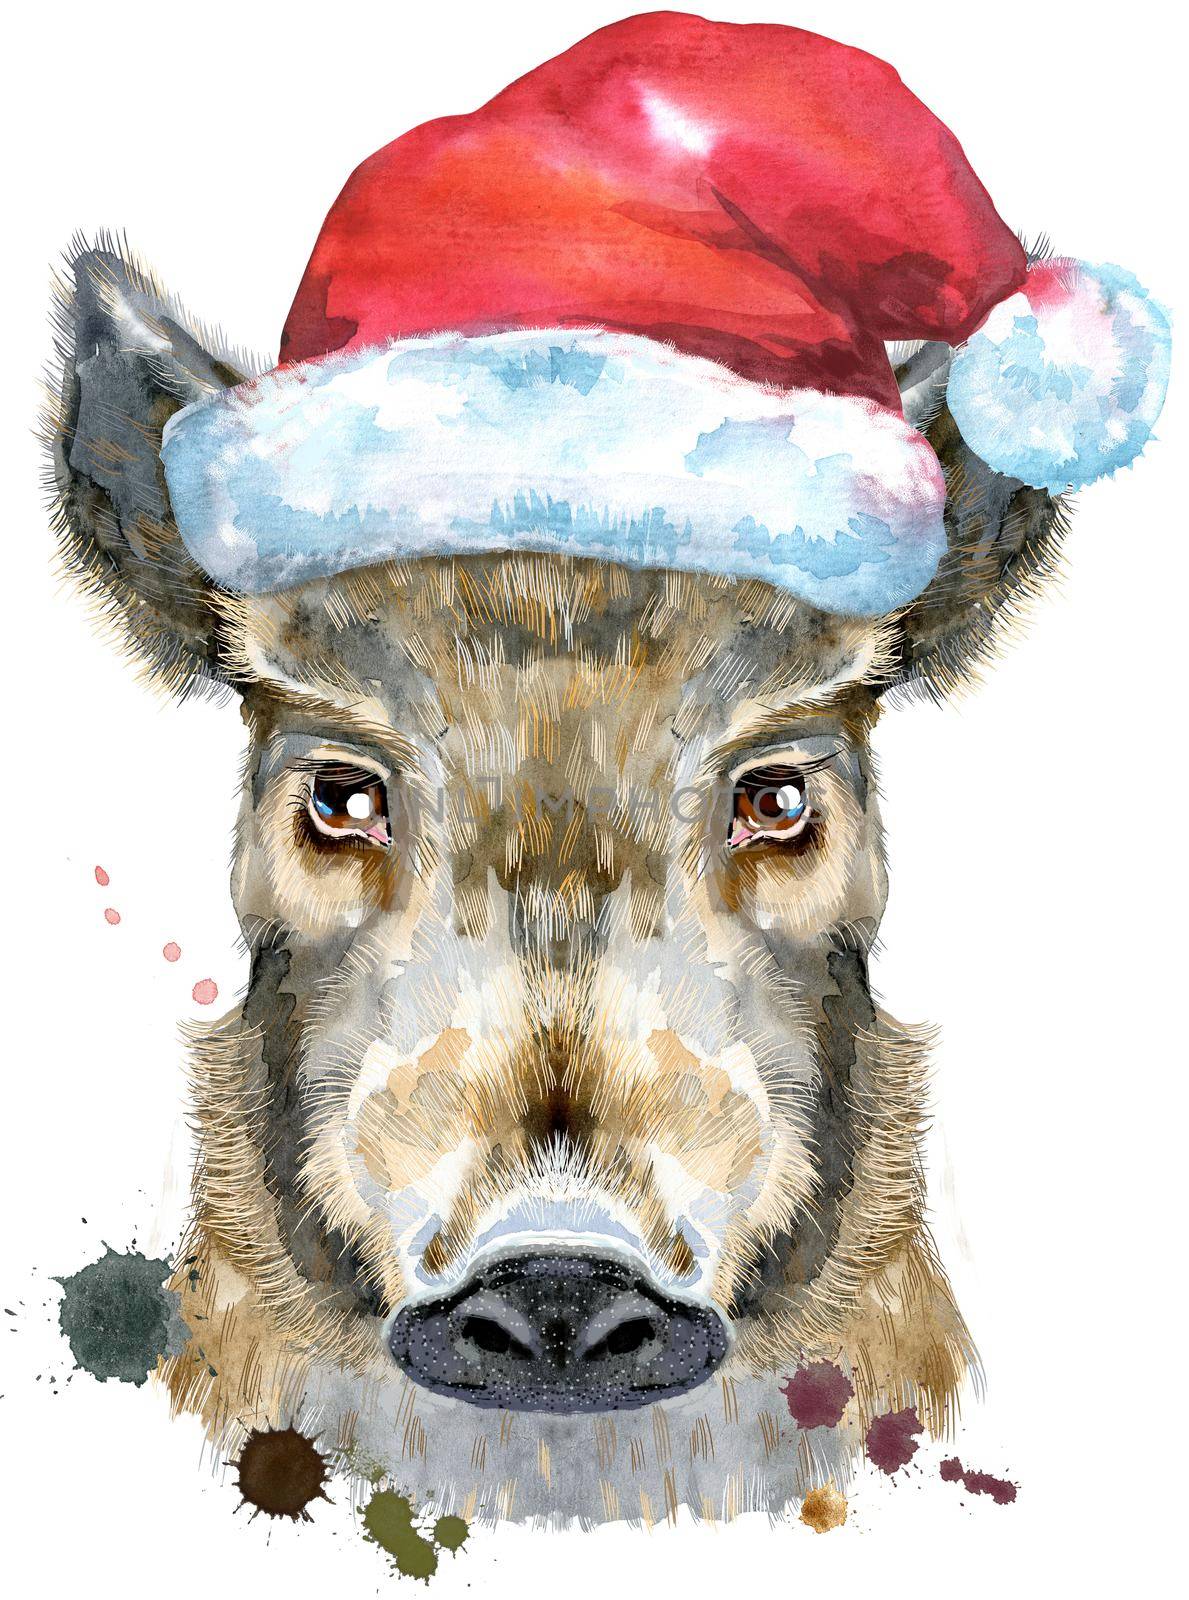 Watercolor portrait of wild boar in Santa hat by NataOmsk